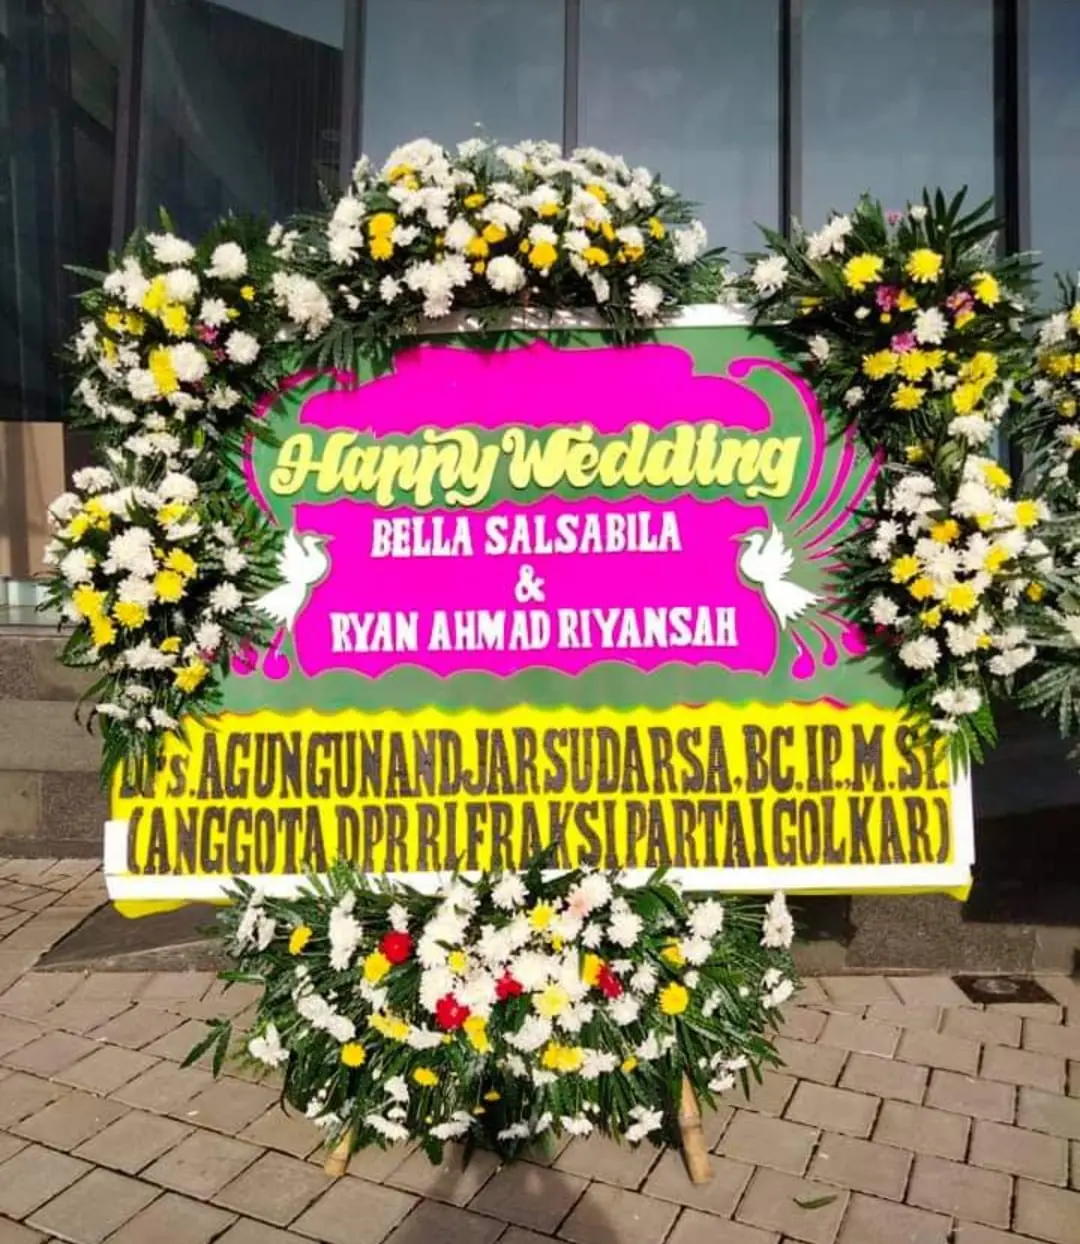  Terima Pesanan Bunga Papan Anniversary  di Darma Kuningan Jawa Barat